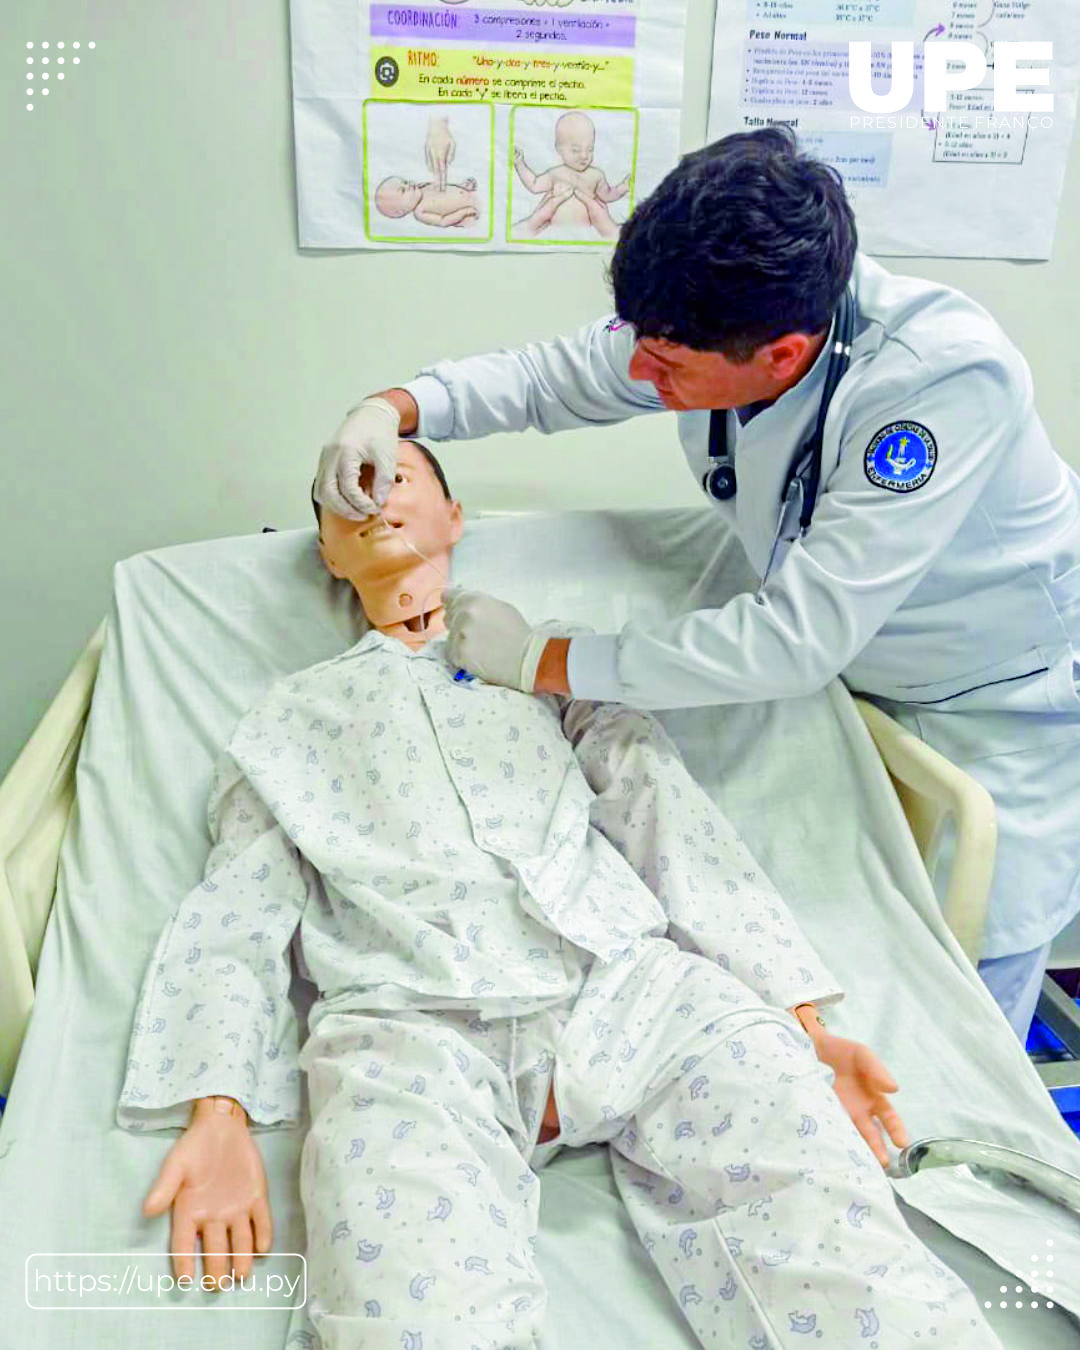 Simulación y Aprendizaje en Enfermería: Entrenamiento en Sonda Nasogástrica